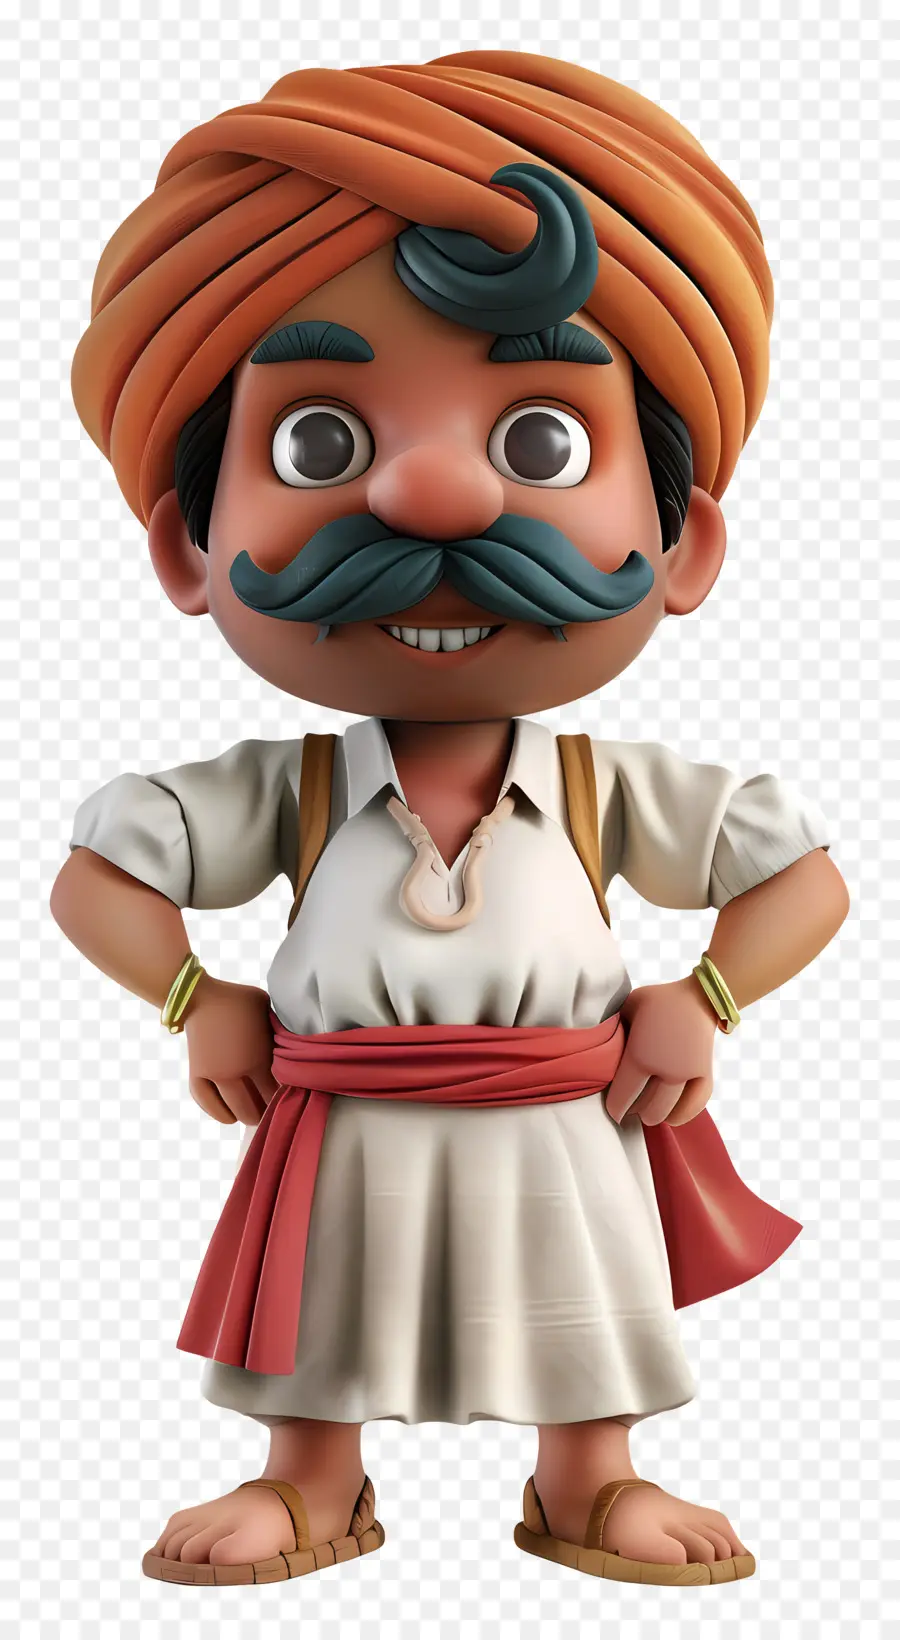 Schnurrbart - Mann in Turban mit Schnurrbart Pose